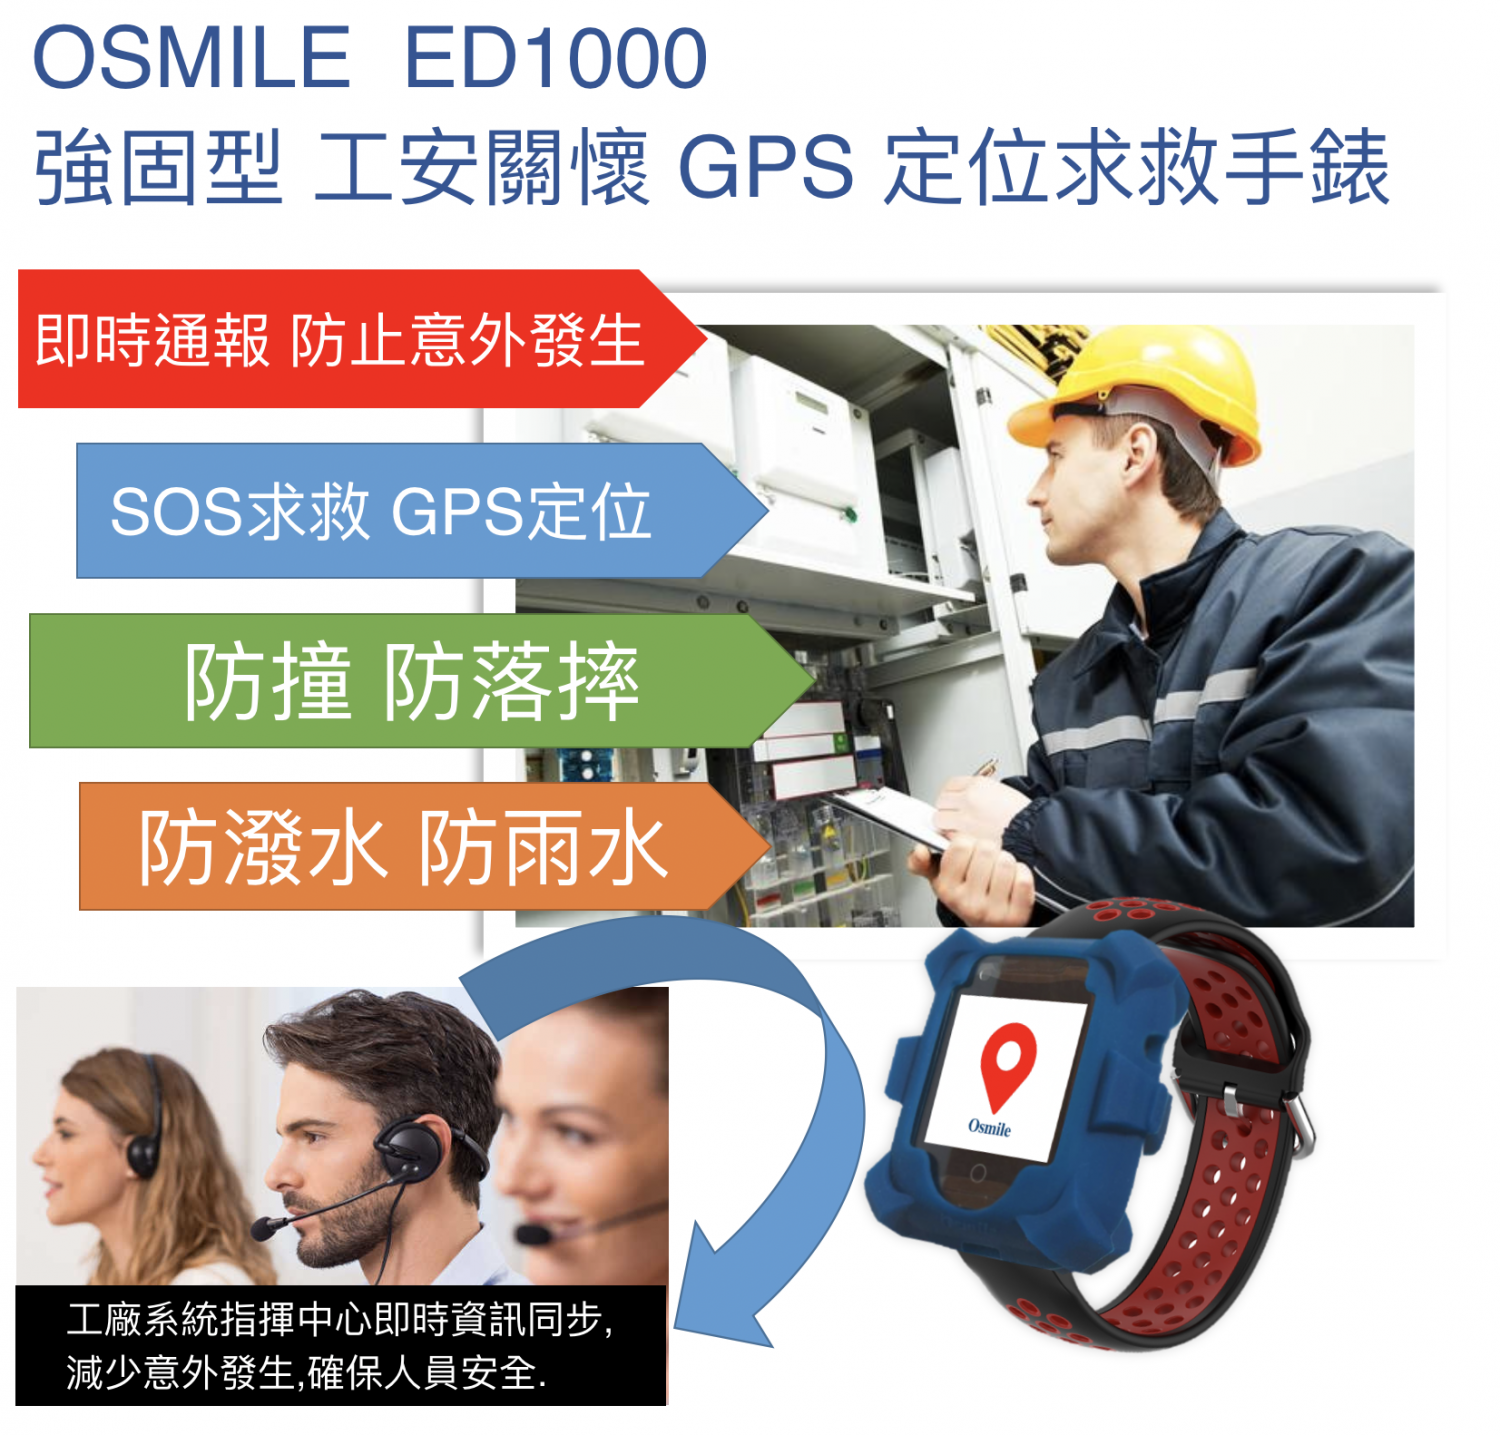 Osmile ED1000 強固型 工安關懷 GPS SOS 求救定位手錶 (獨立作業員工）含遠端影音監看功能